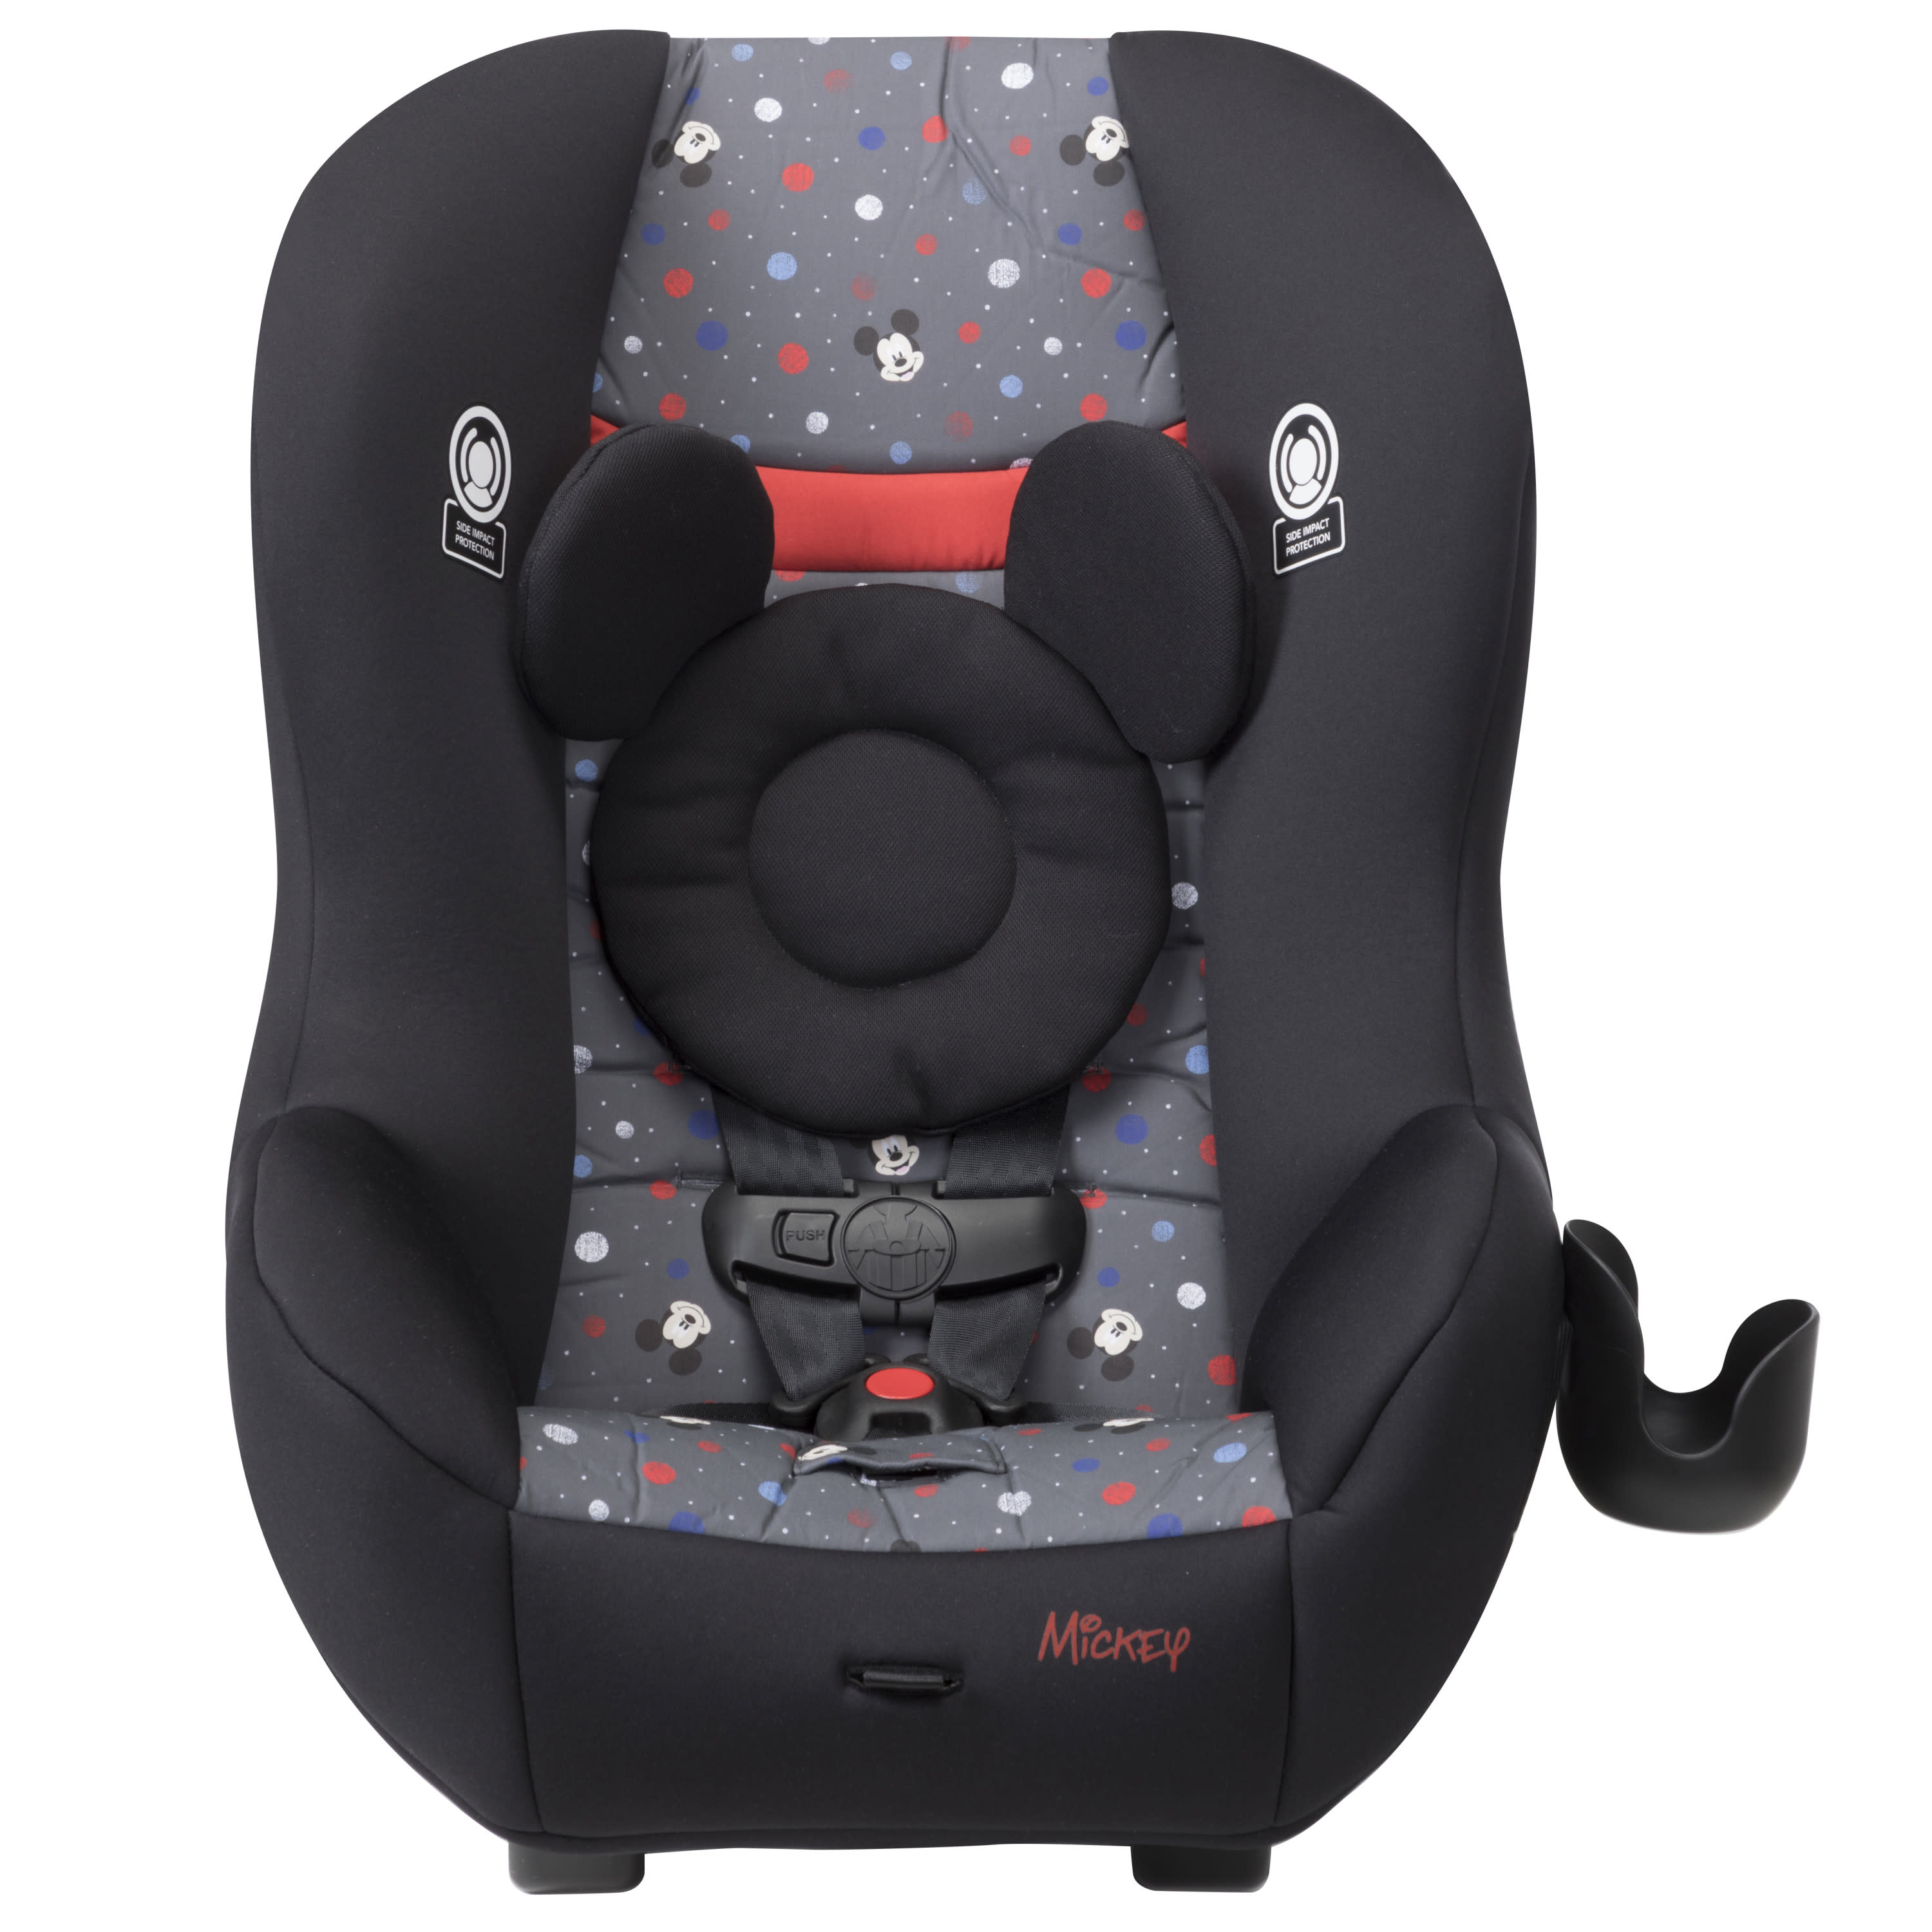 Disney Baby Scenera NEXT Luxe Convertible Car Seat, Mickey Indigo Dreams - image 3 of 16